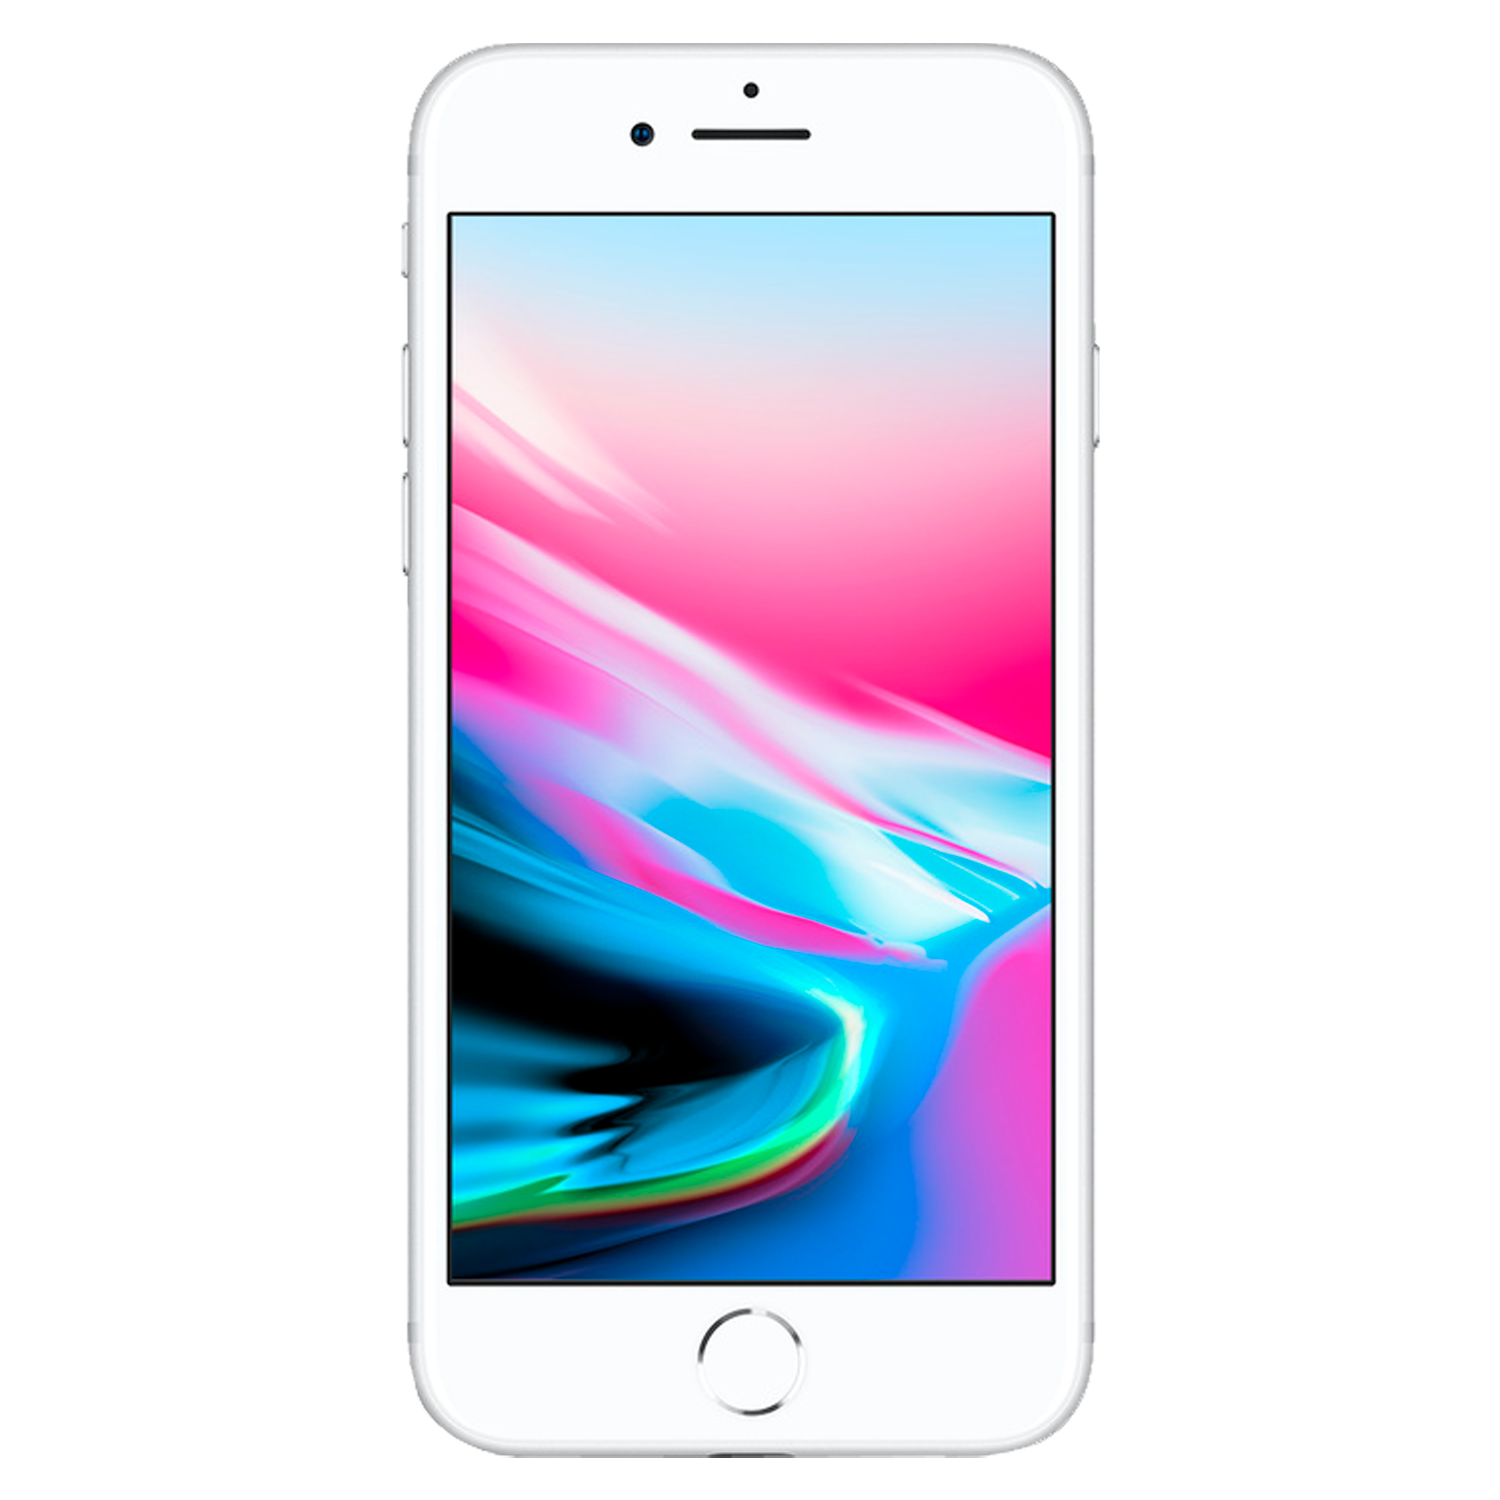 Apple iPhone 8 *Swap A* A1905/1863/1906 64GB 2GB RAM Tela 4.7'' - Prata (Somente Aparelho)